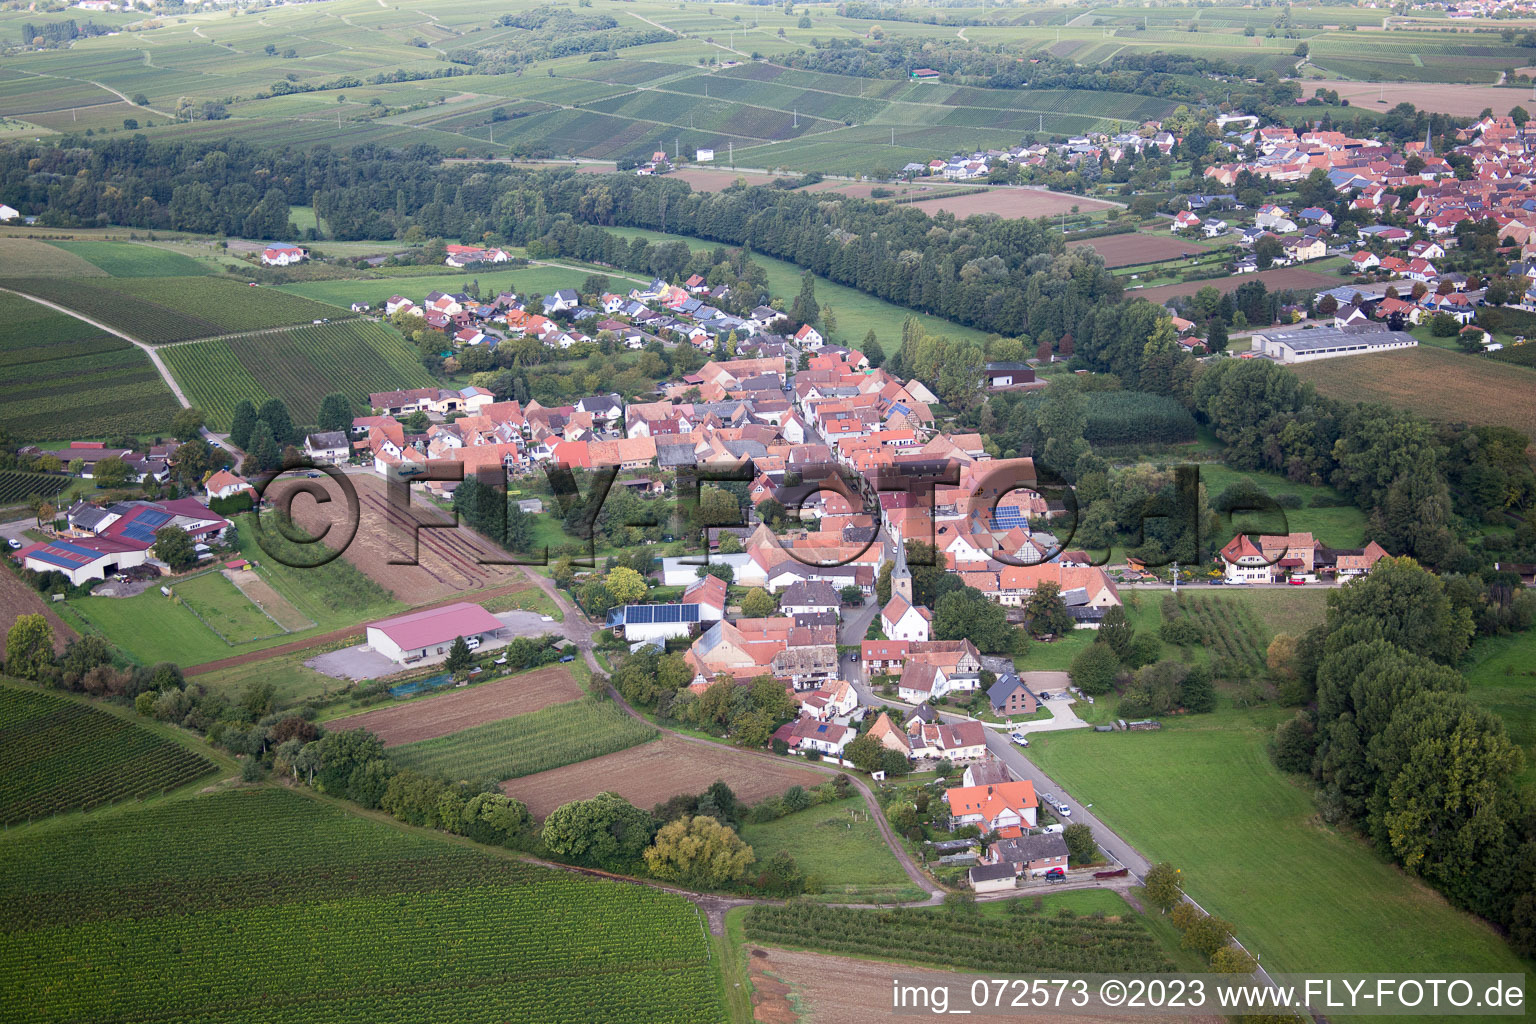 Aerial photograpy of District Klingen in Heuchelheim-Klingen in the state Rhineland-Palatinate, Germany